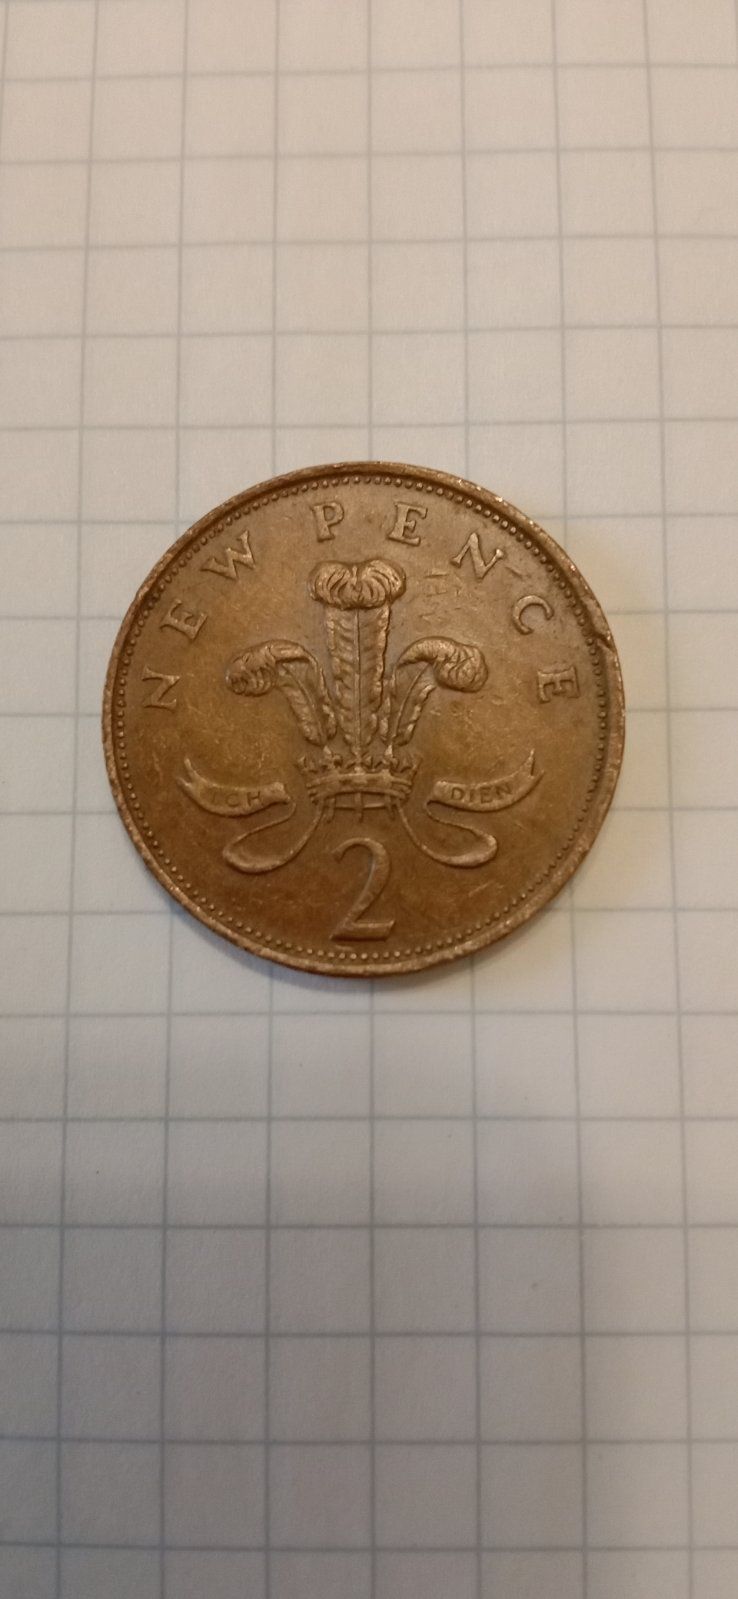 Редкая монета 1981 года.